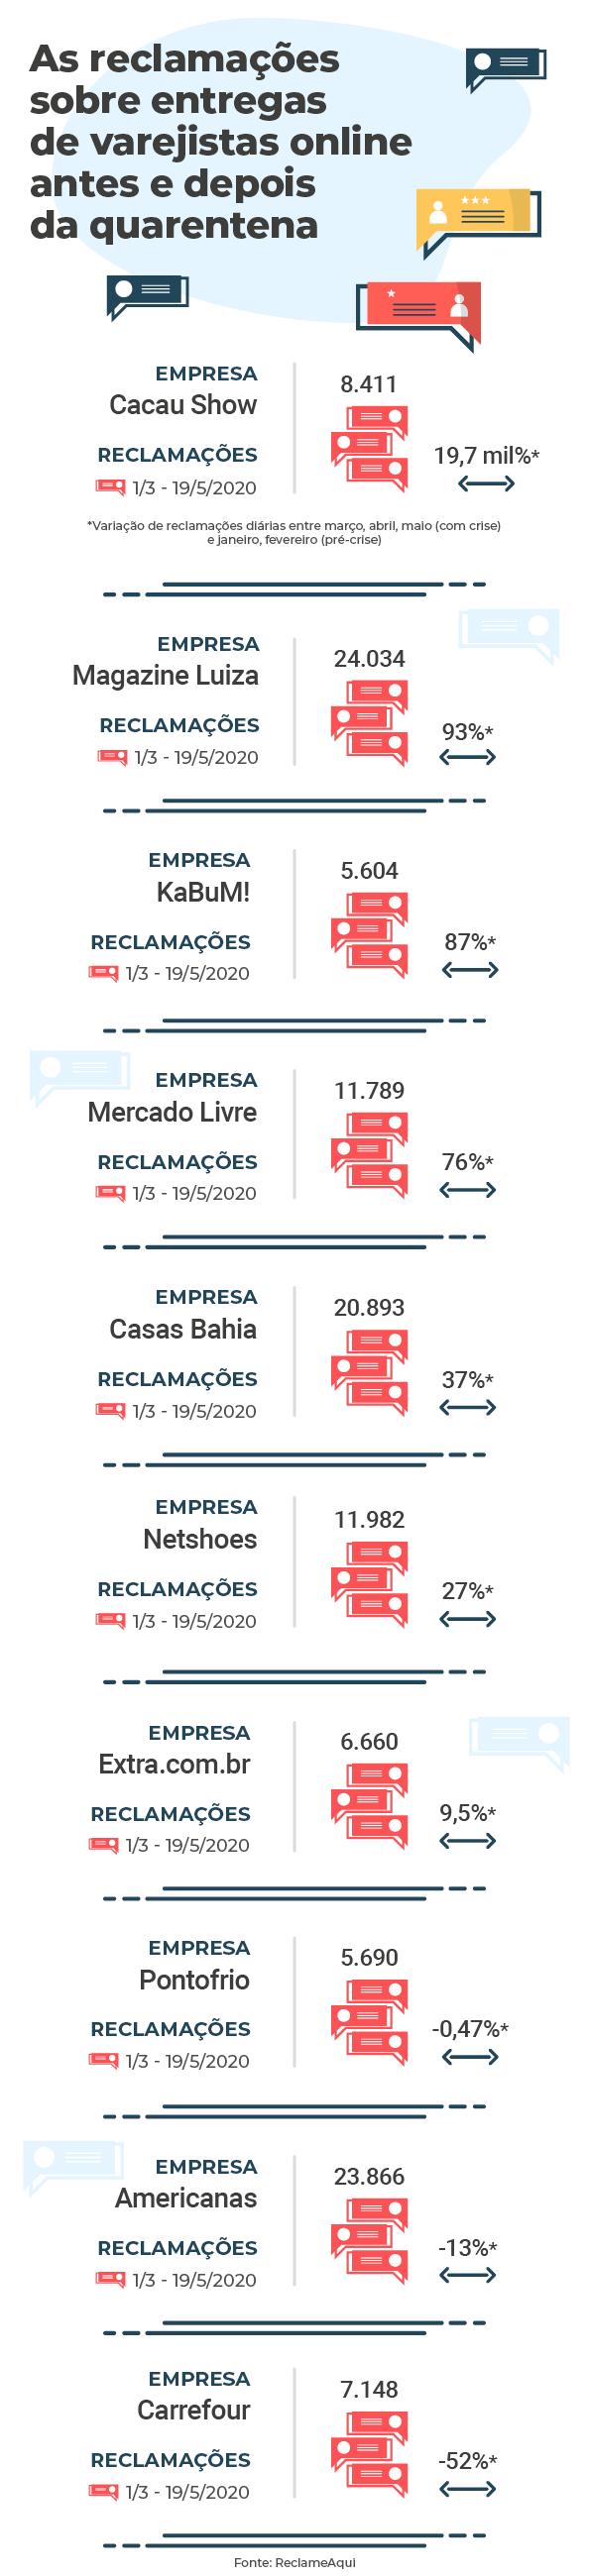 Infográfico que mostra ranking das varejistas mais reclamadas em relação à entregas na quarentena